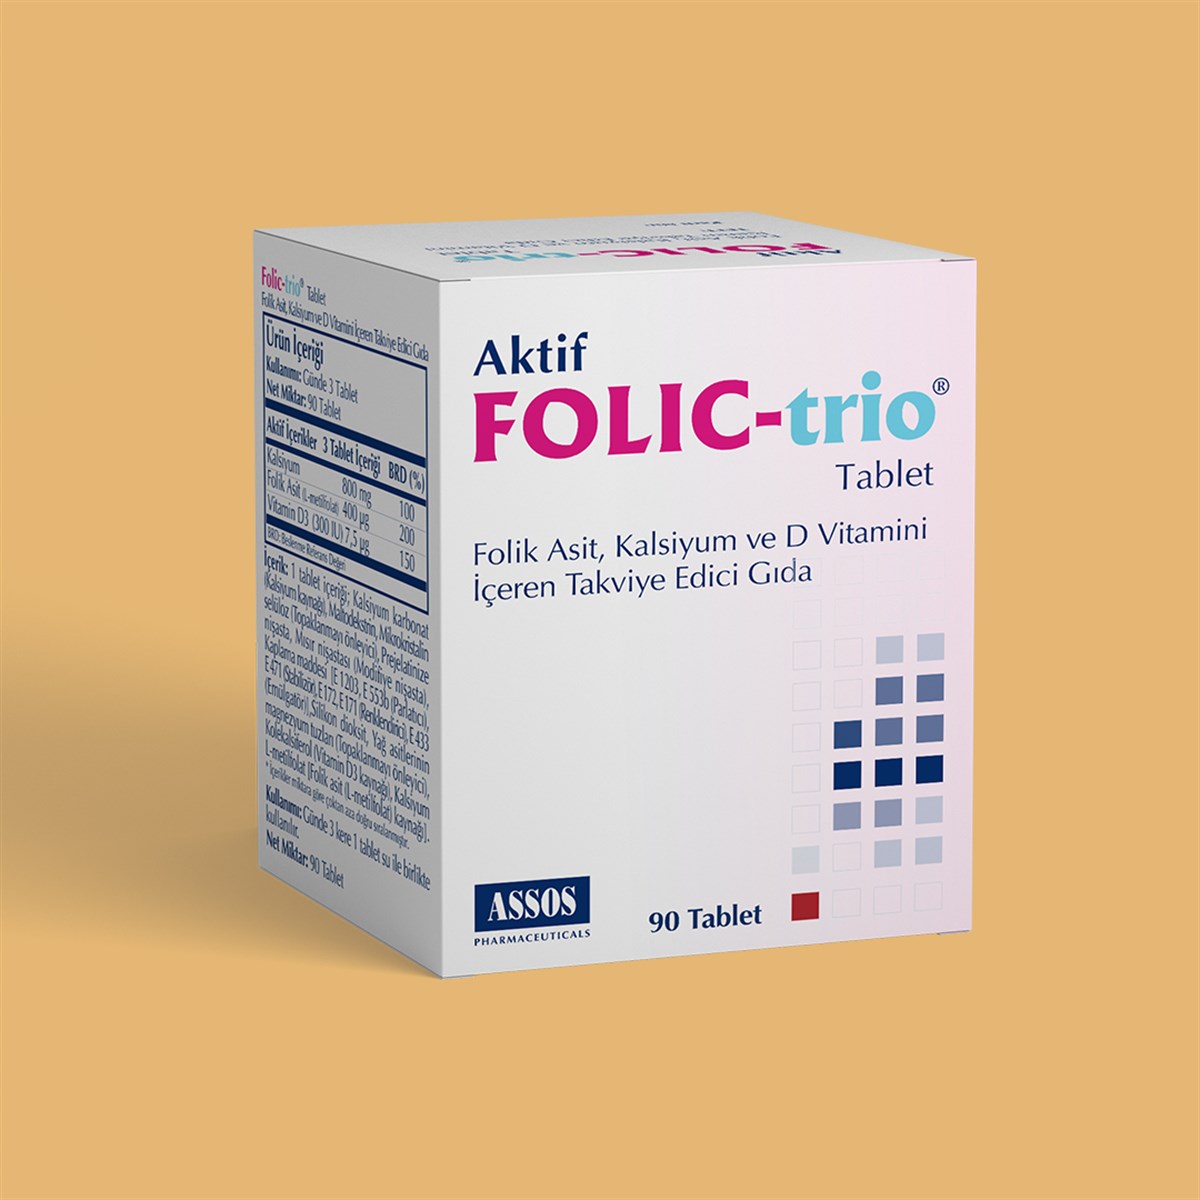 ASSOS PHARMACEUTICALS Folic Trio | u-form.com.tr